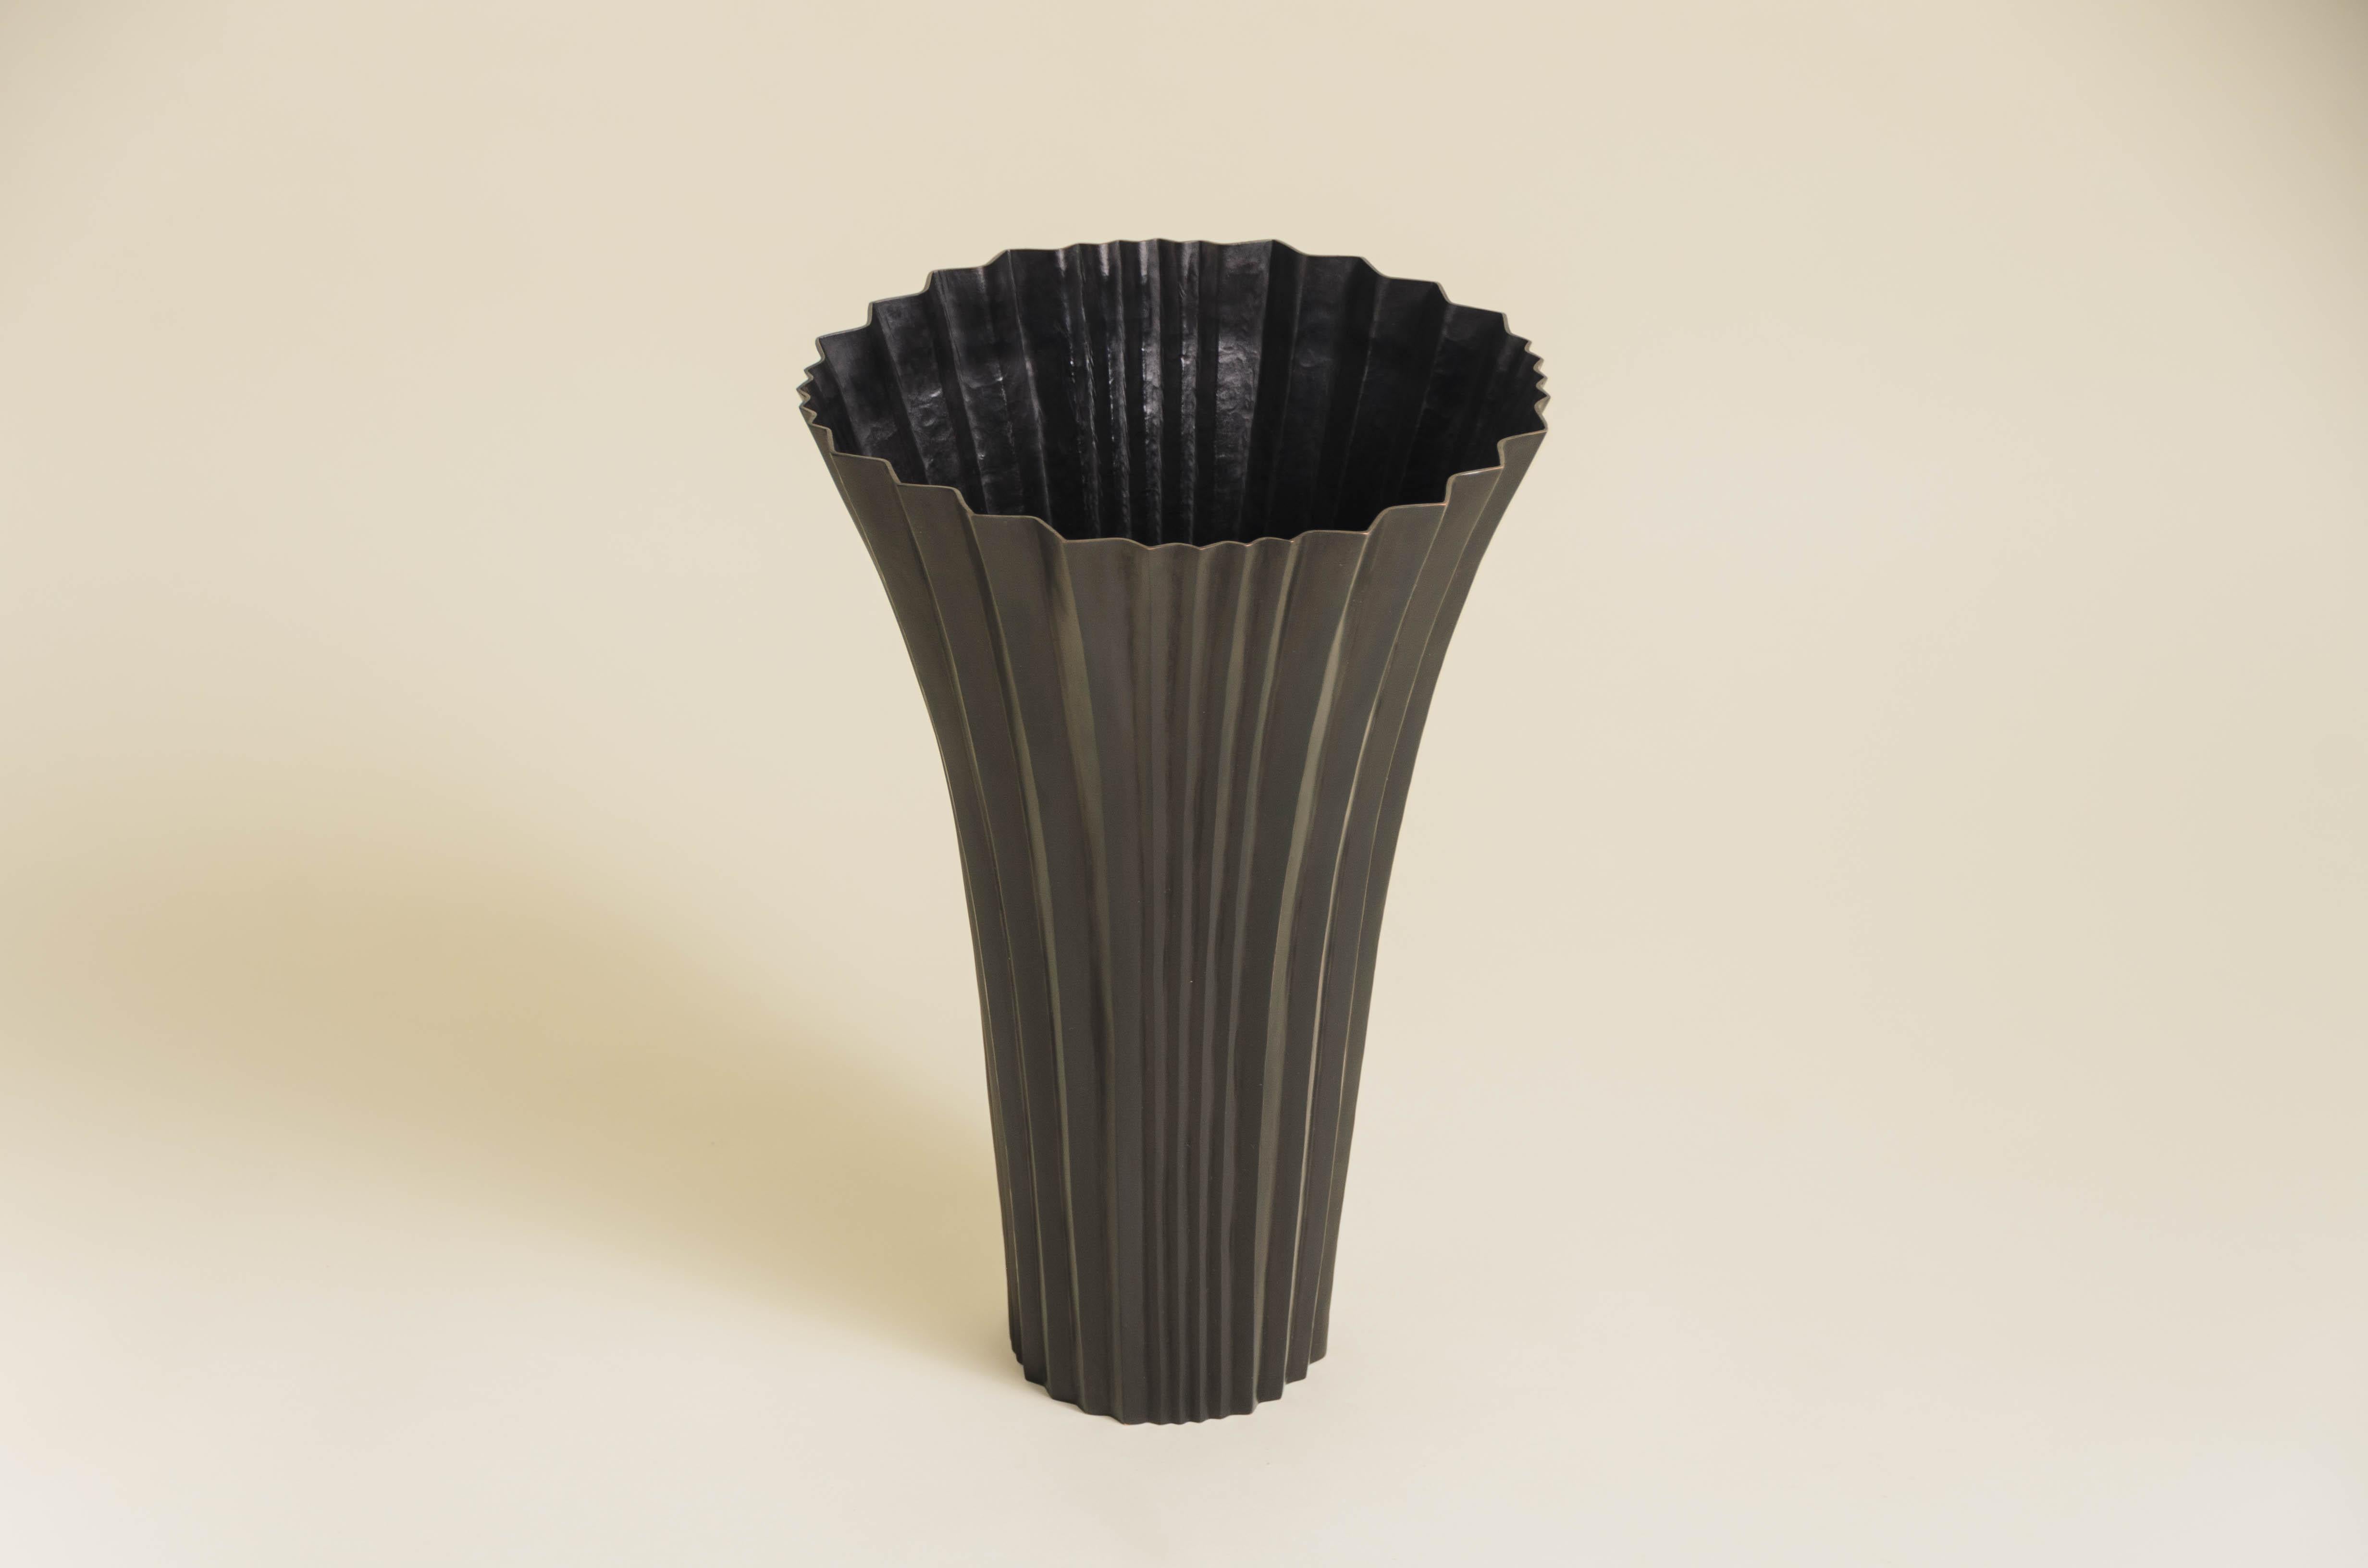 Vase mit Fächerdesign
Schwarz-Kupfer-Finish
Hand Repoussé
Zeitgenössisch
Limitierte Auflage
Jedes Stück wird individuell angefertigt und ist einzigartig. 

Repoussé ist die traditionelle Kunst, ein dekoratives Relief von Hand auf ein Blech zu